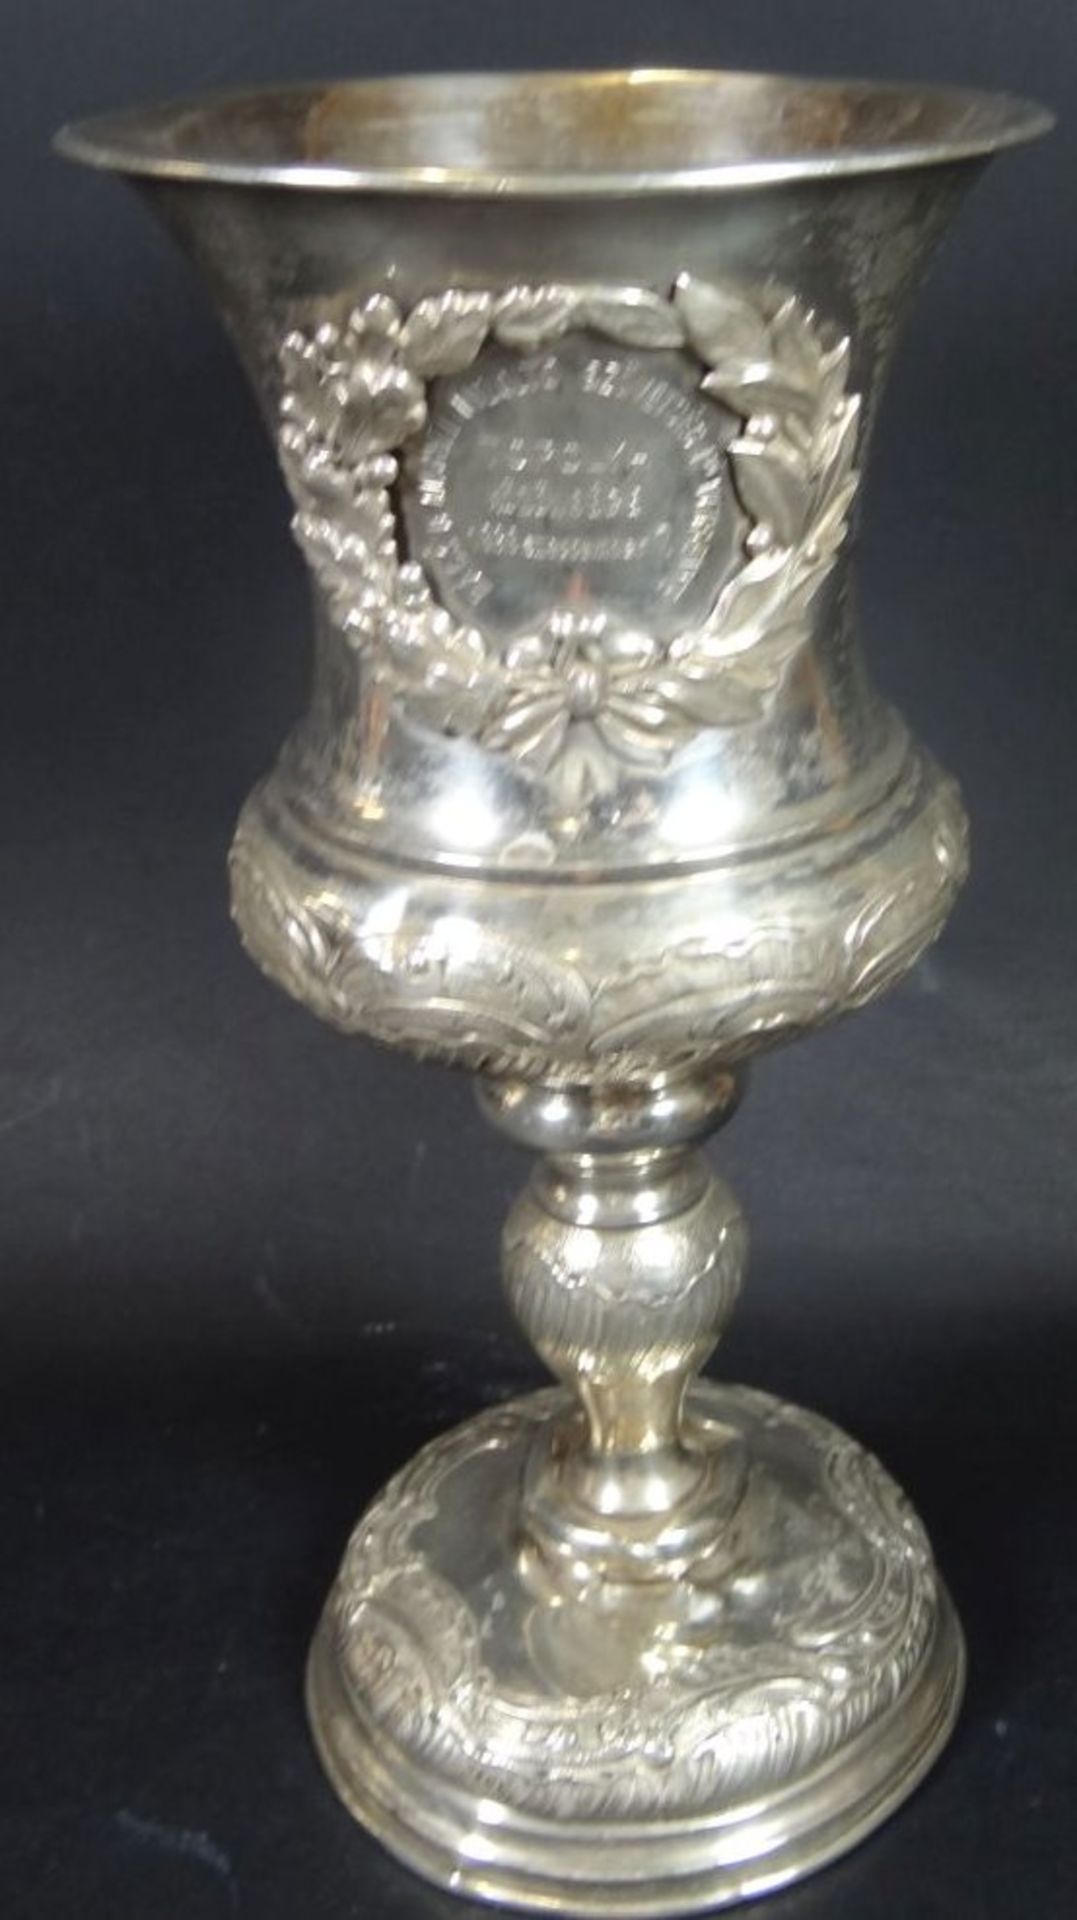 Silber-800- Pokal, Feuerwehr Wettkampf 1898 in Topolya, Ungarn (heute Serbien), ungar. - Bild 2 aus 8